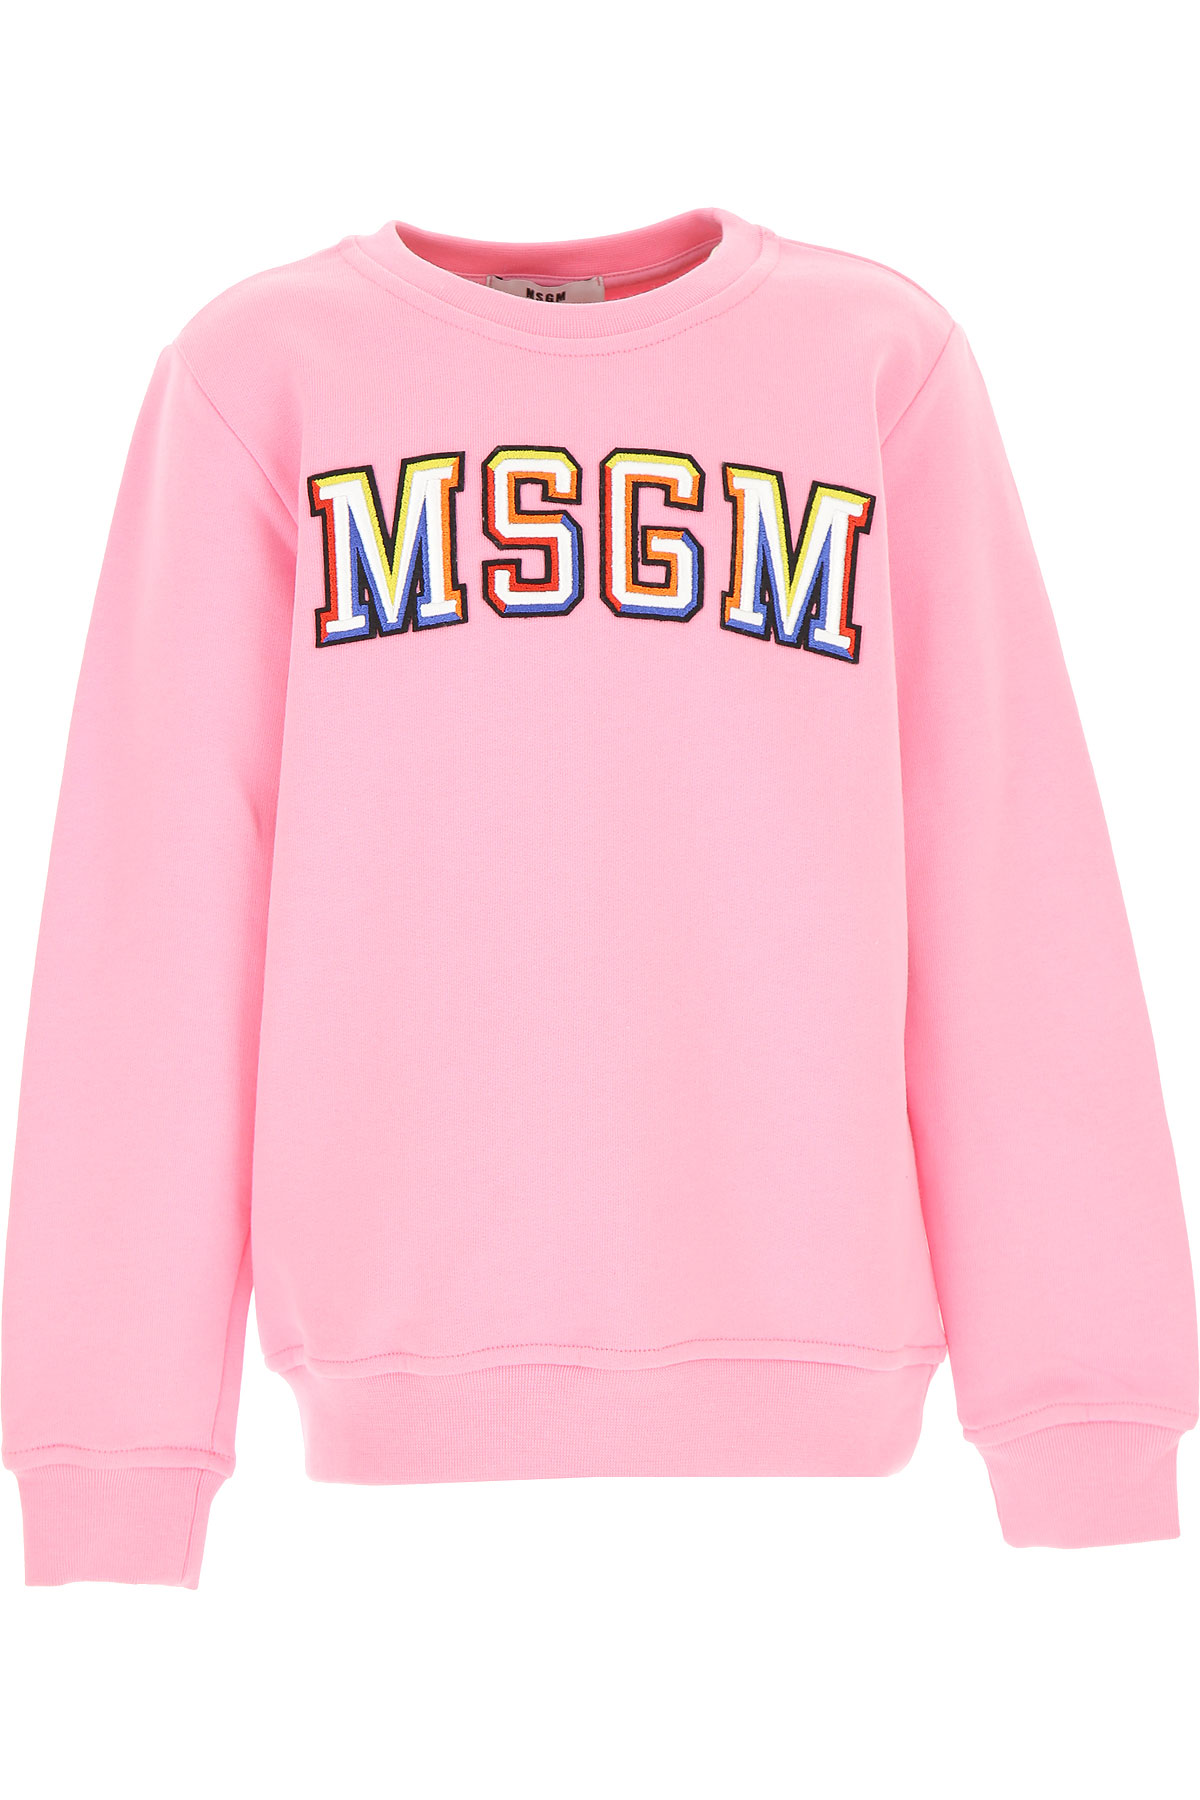 MSGM Kinder Sweatshirt & Kapuzenpullover für Mädchen Günstig im Sale, Pink, Baumwolle, 2017, 14Y 8Y